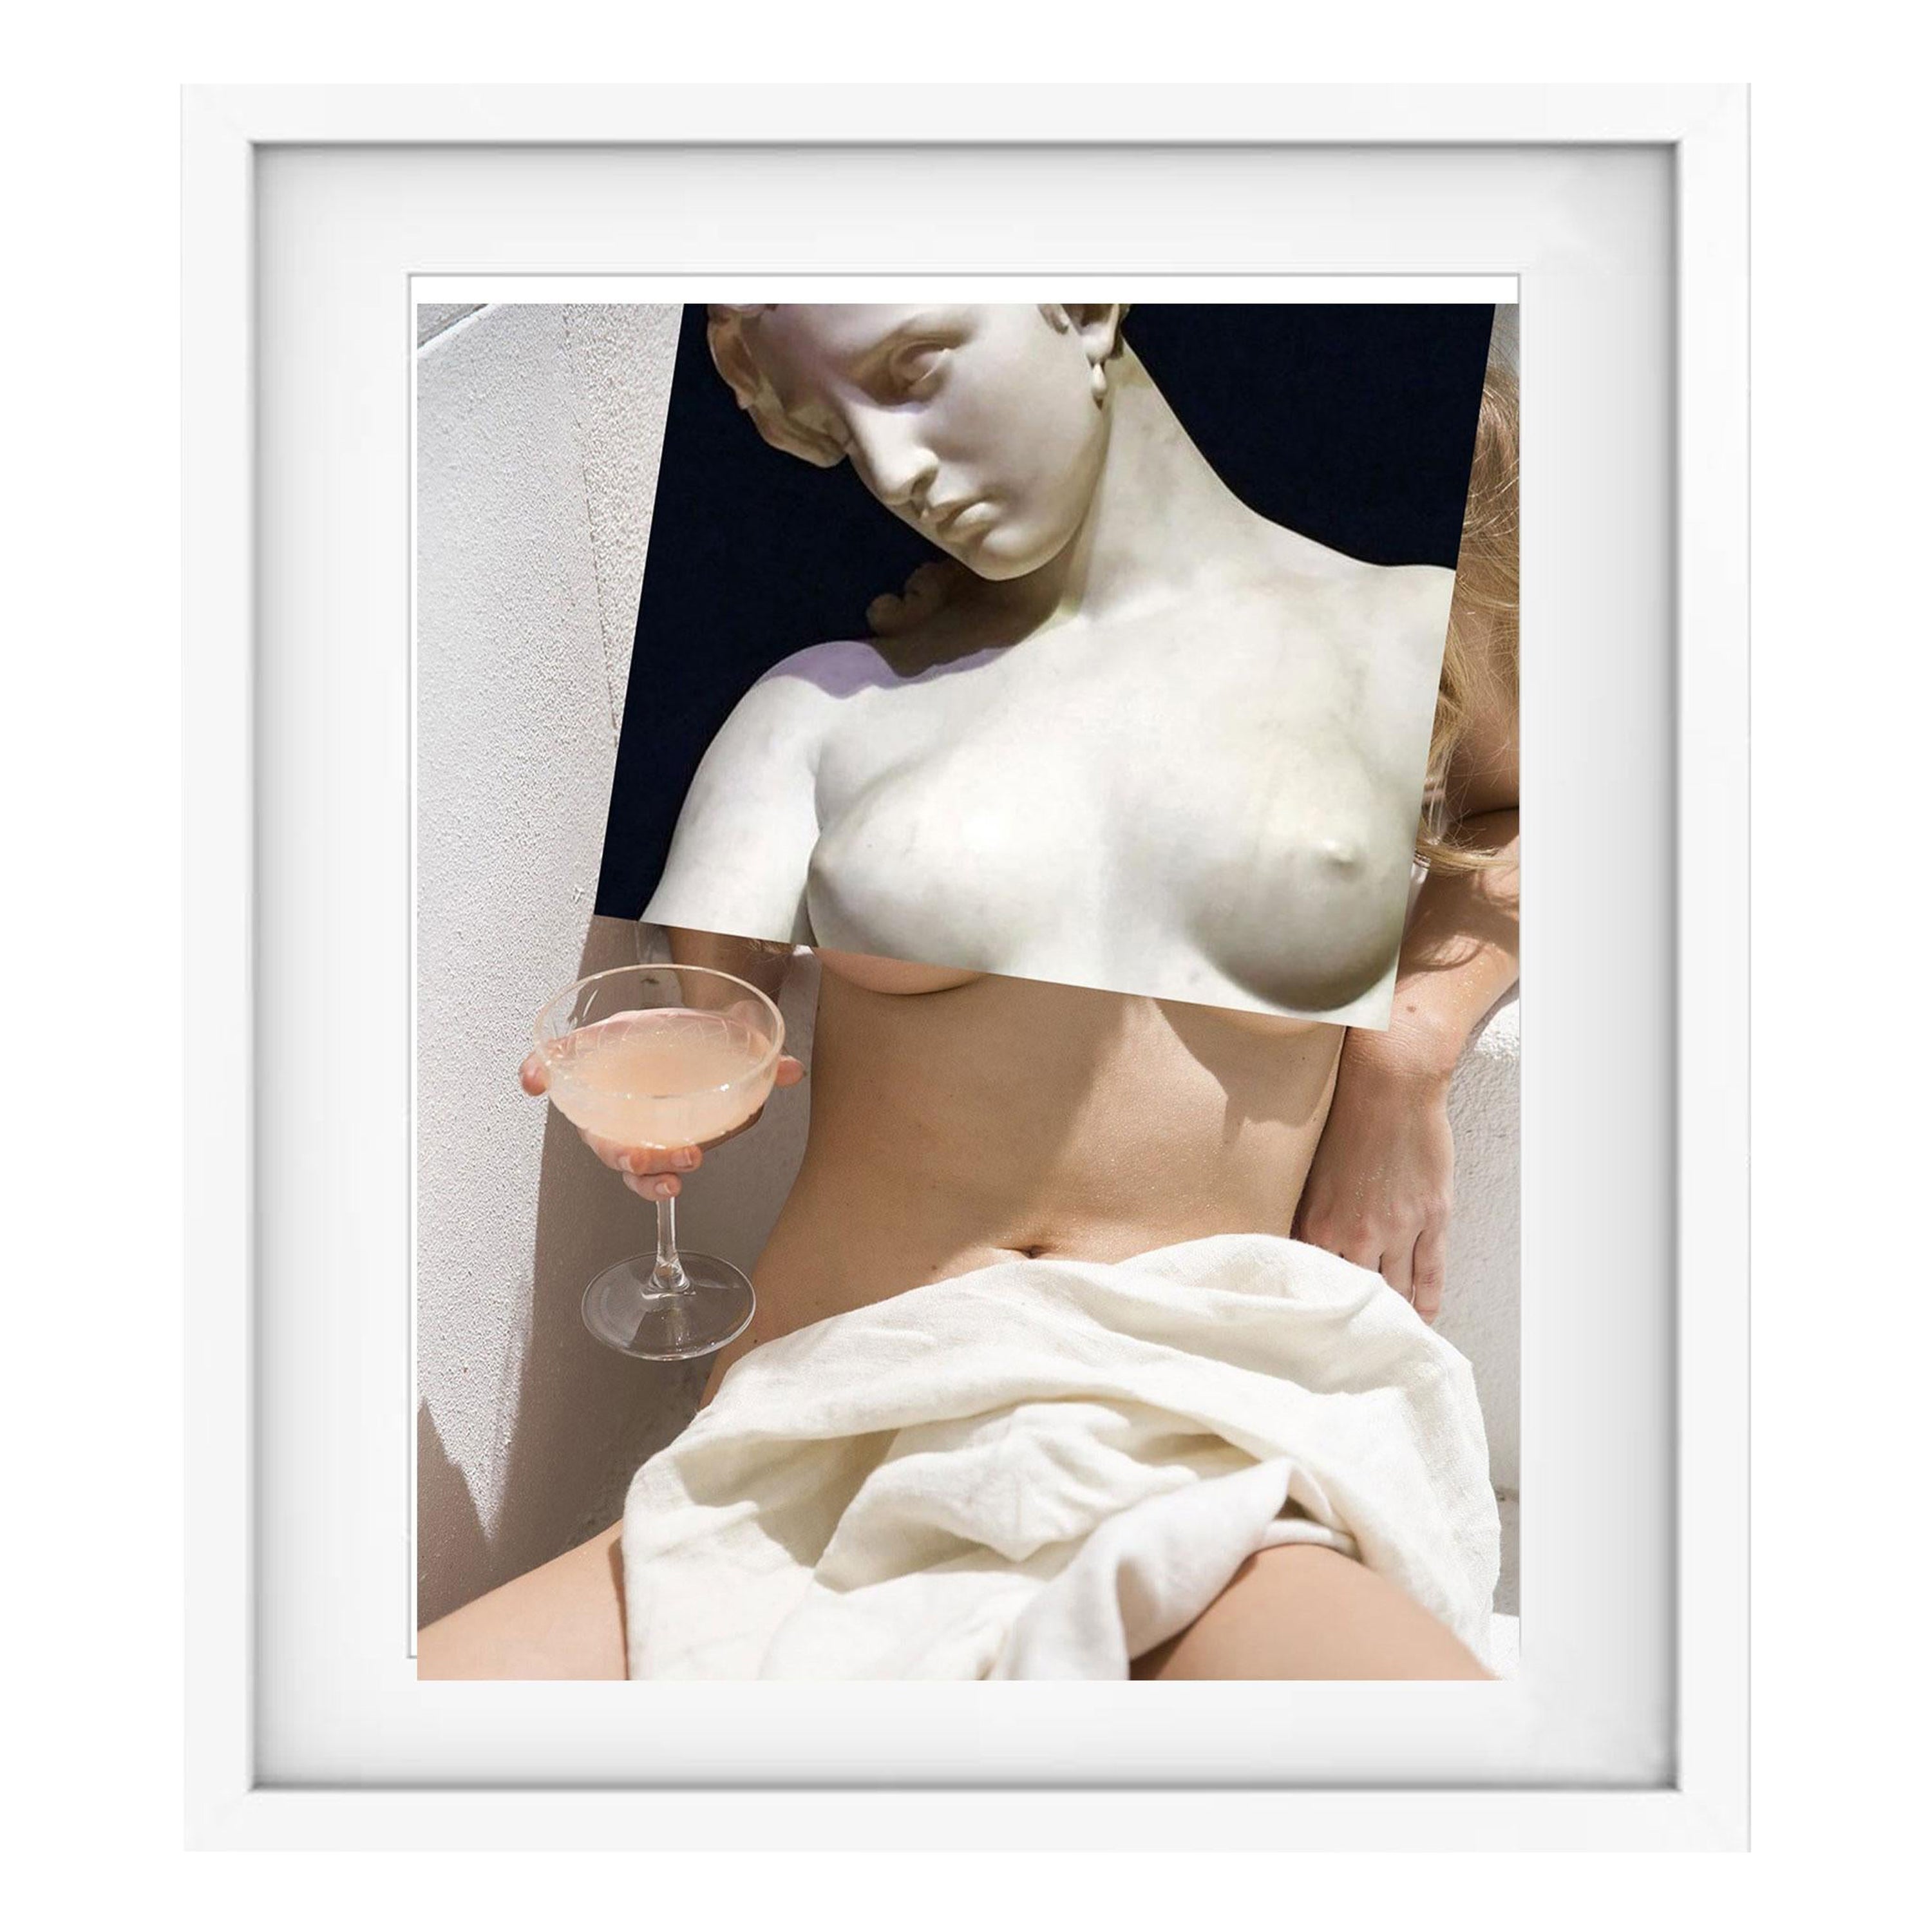 Sculpture classique érotique de Naro Pinosa, « Sans titre » Collage numérique, Espagne, 2019